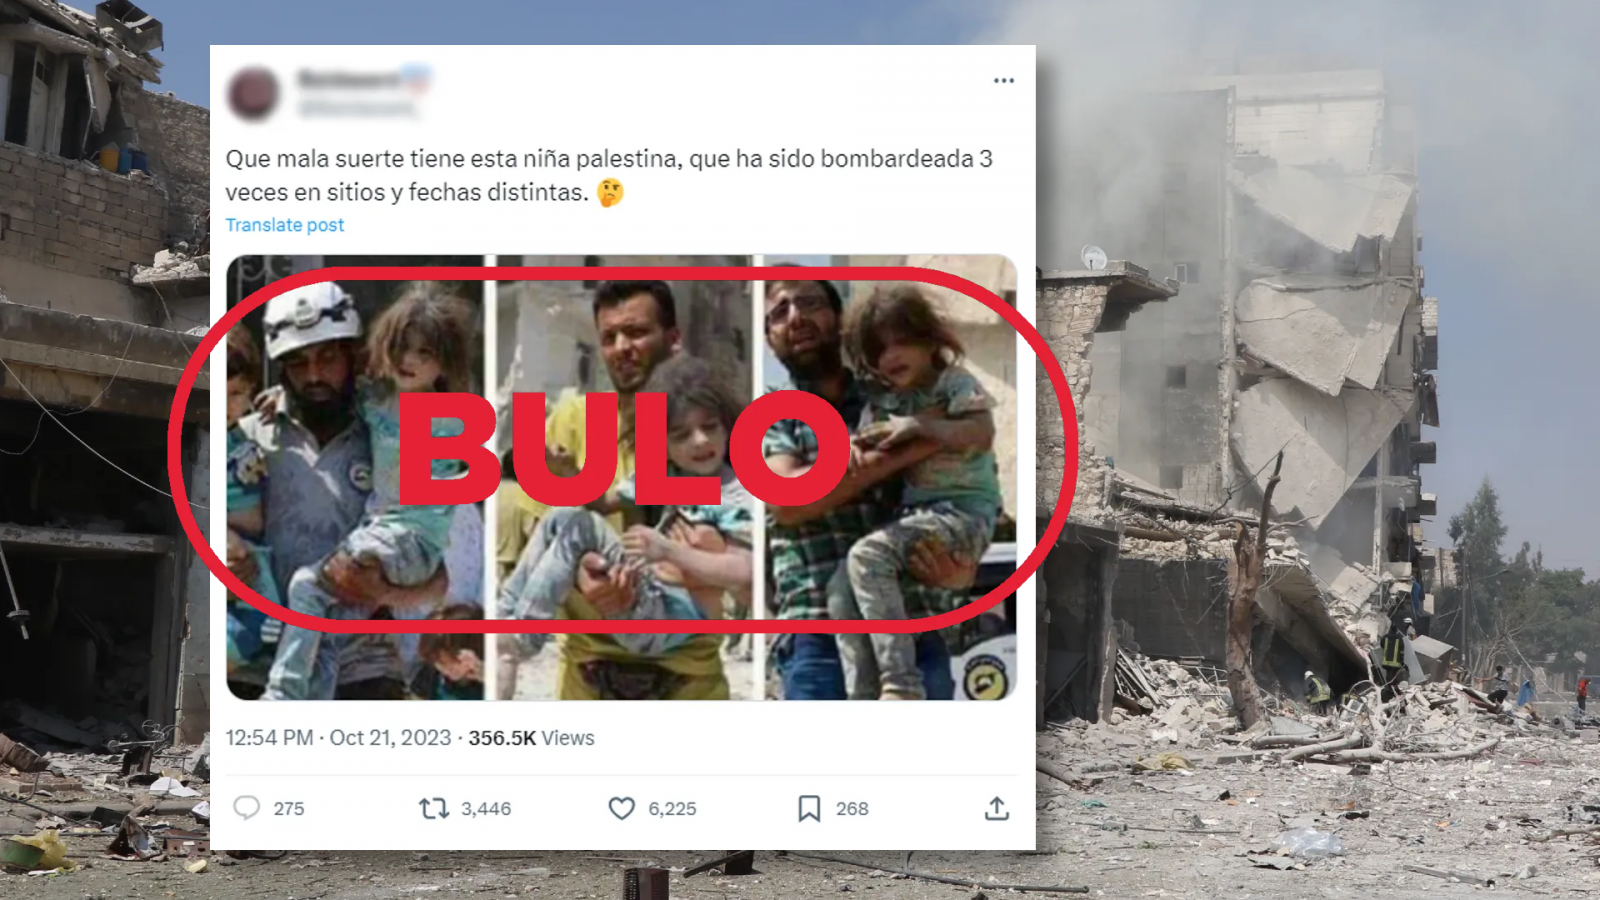 Desinformación Gaza: Publicación que utiliza tres fotos del mismo rescate en Siria en 2016 para difundir el bulo de que es la misma niña palestina en tres bombardeos diferentes, con el sello Bulo en rojo de VerificaRTVE.